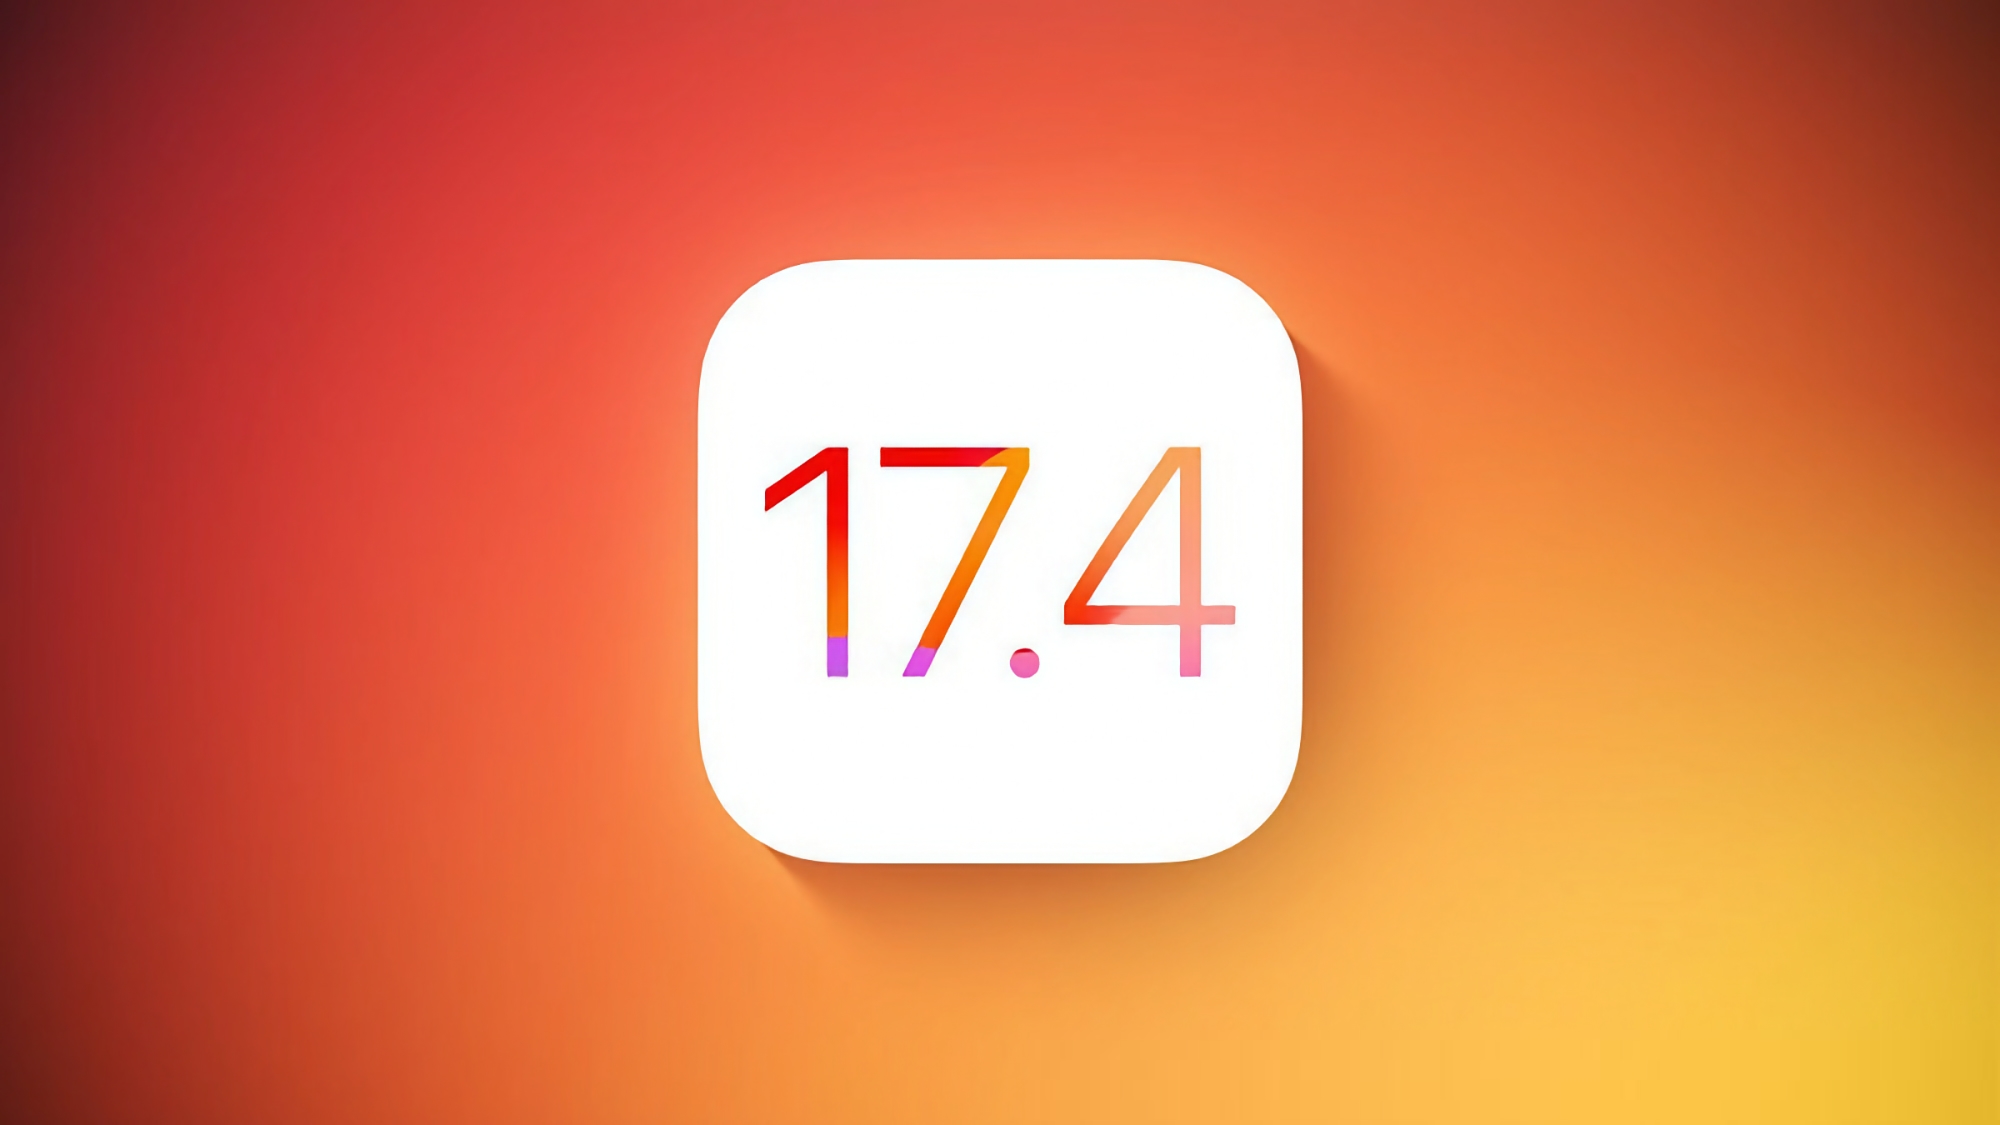 Apple har sluppet den andre betaversjonen av iOS 17.4.